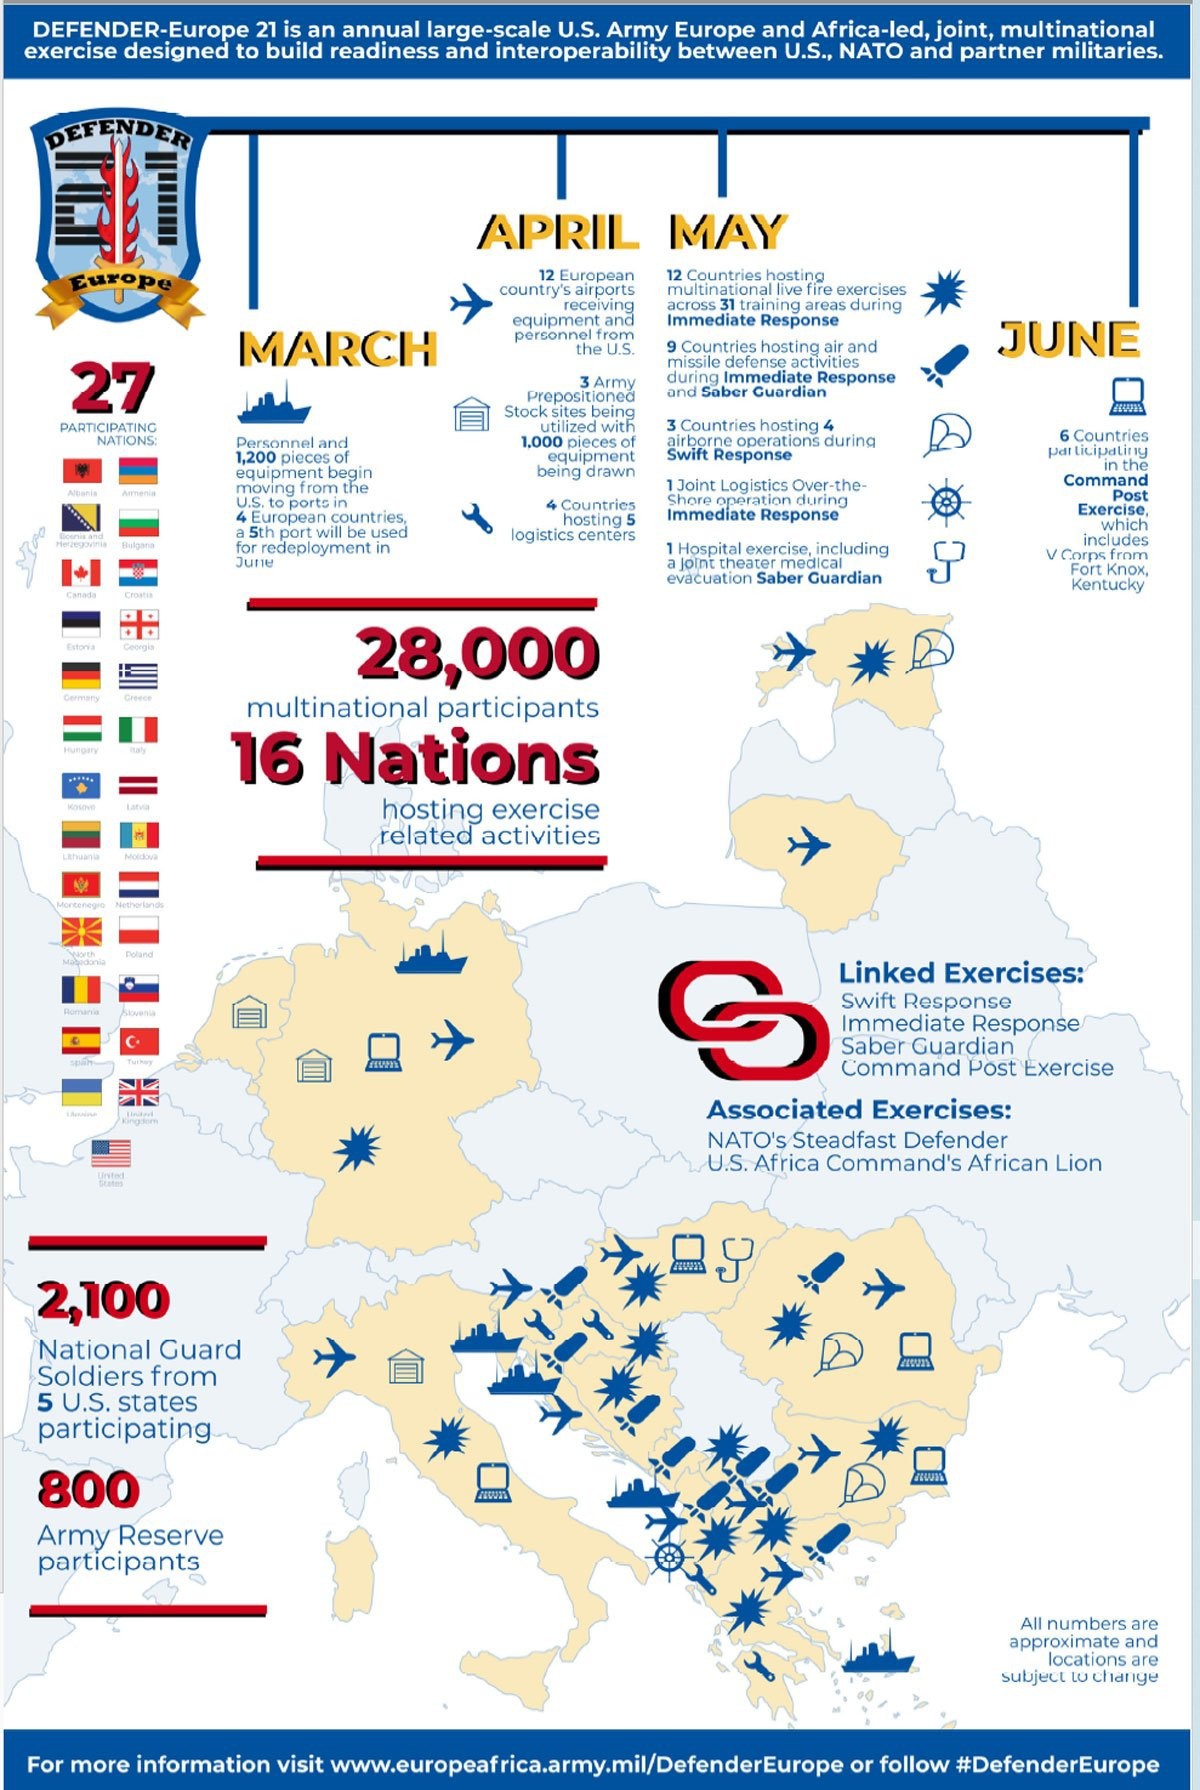 Командование Сухопутных войск США в Европе в распространённом пресс-релизе сообщило, что в манёврах Defender Europe 21 примут участие 28.000 военнослужащих из 27 стран НАТО и его партнёров.